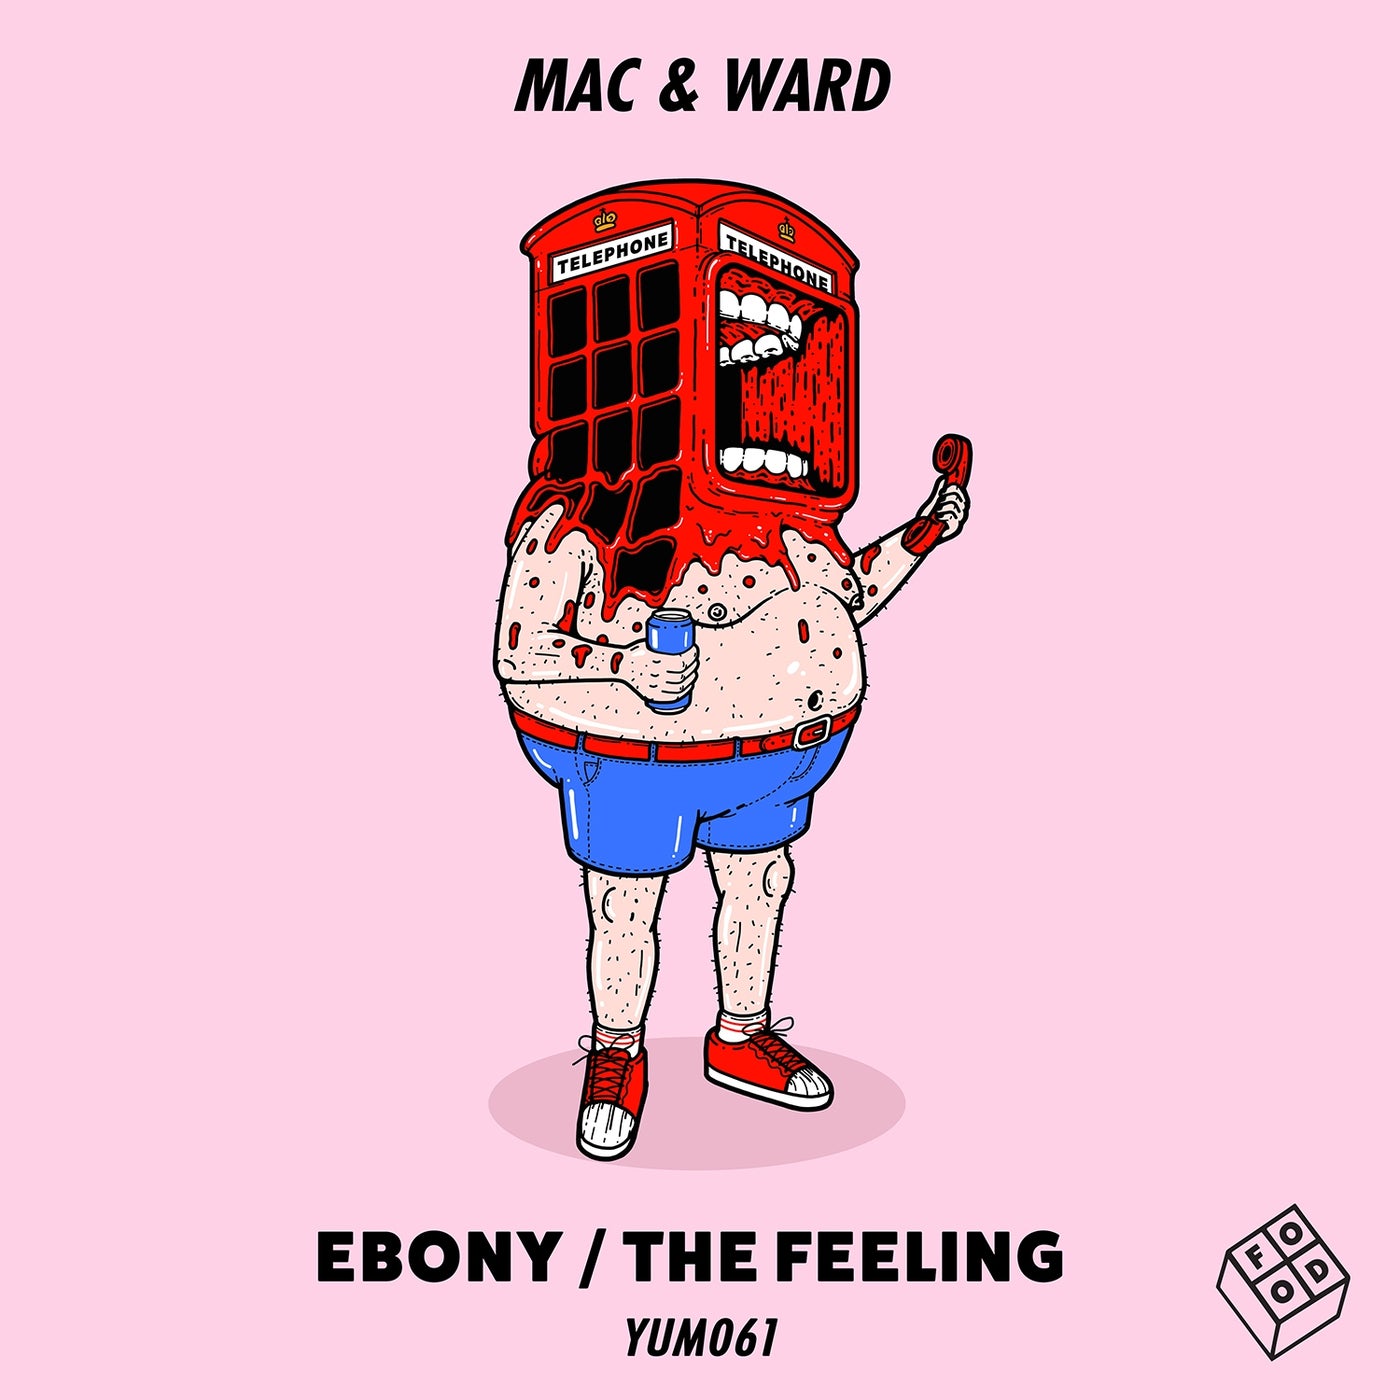 Ebony / The Feeling